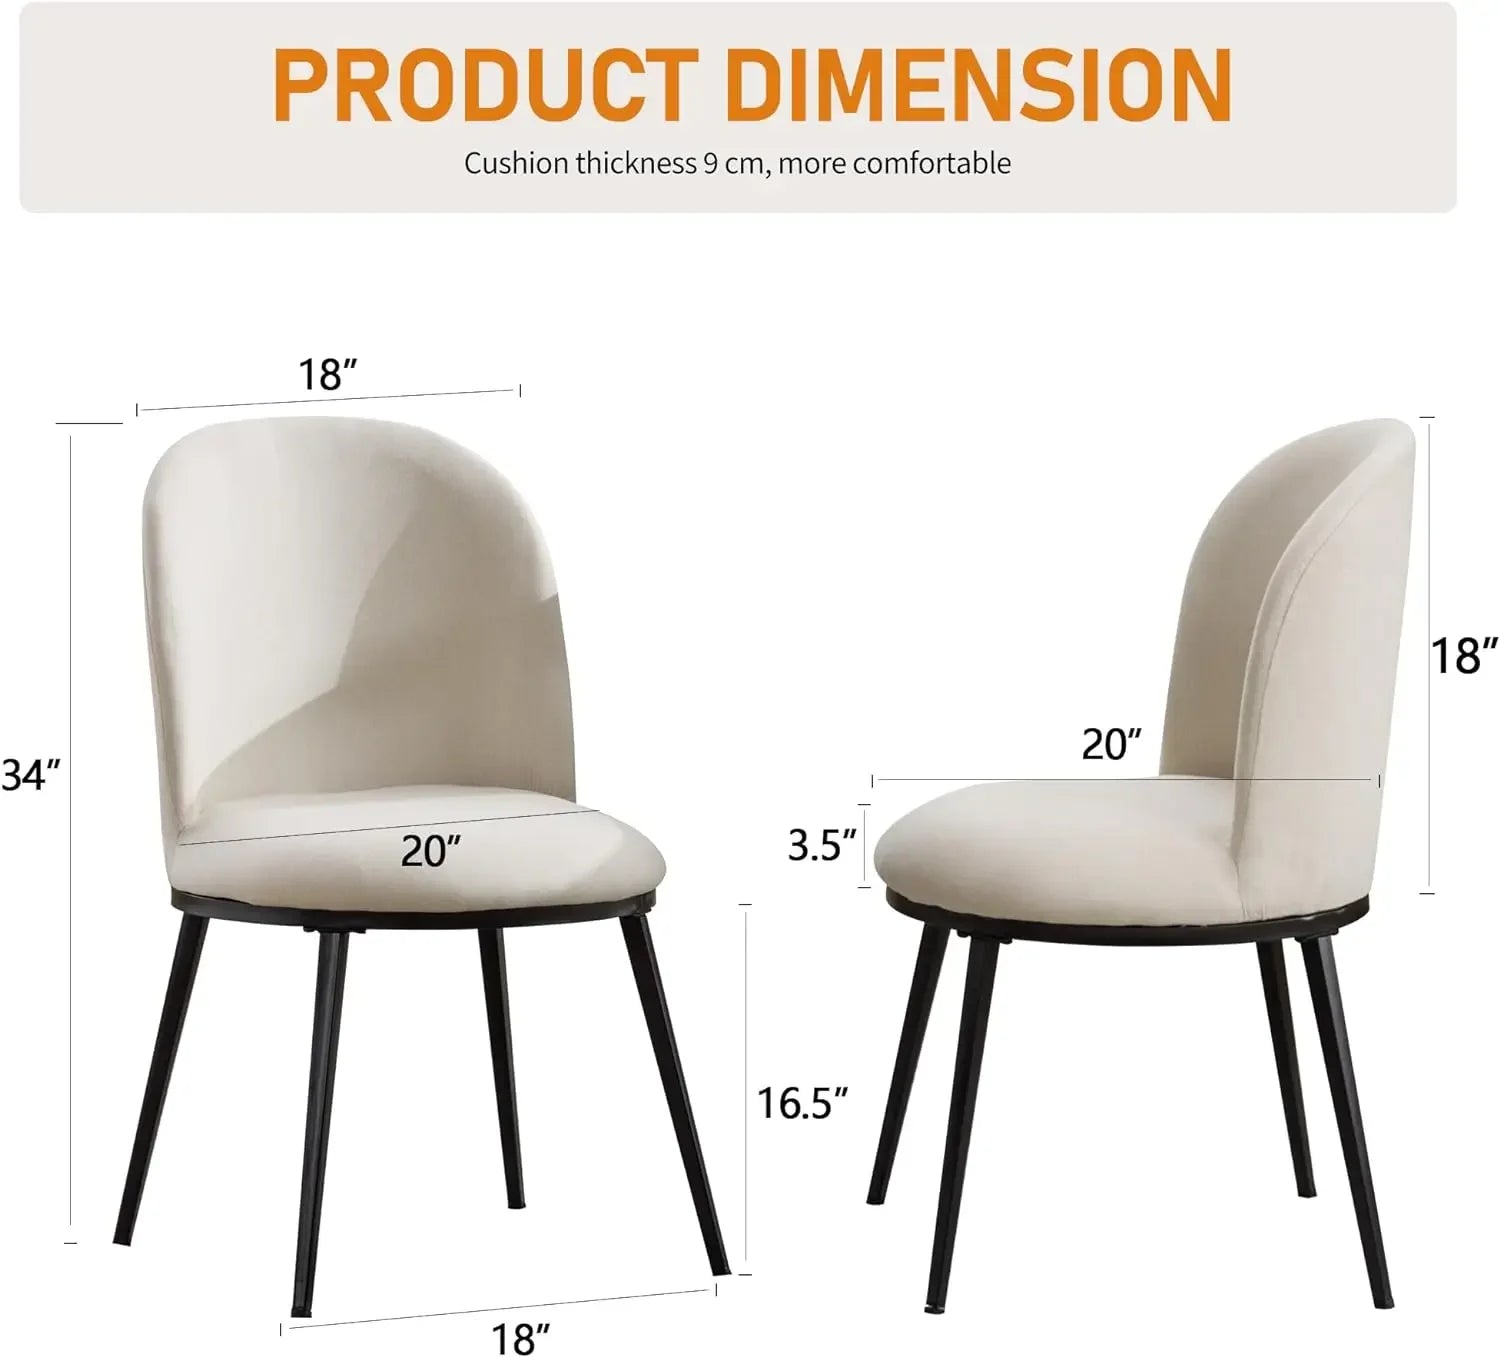 Enkelstil Nordstol - 2 Simple Nordic Dining Chair Set